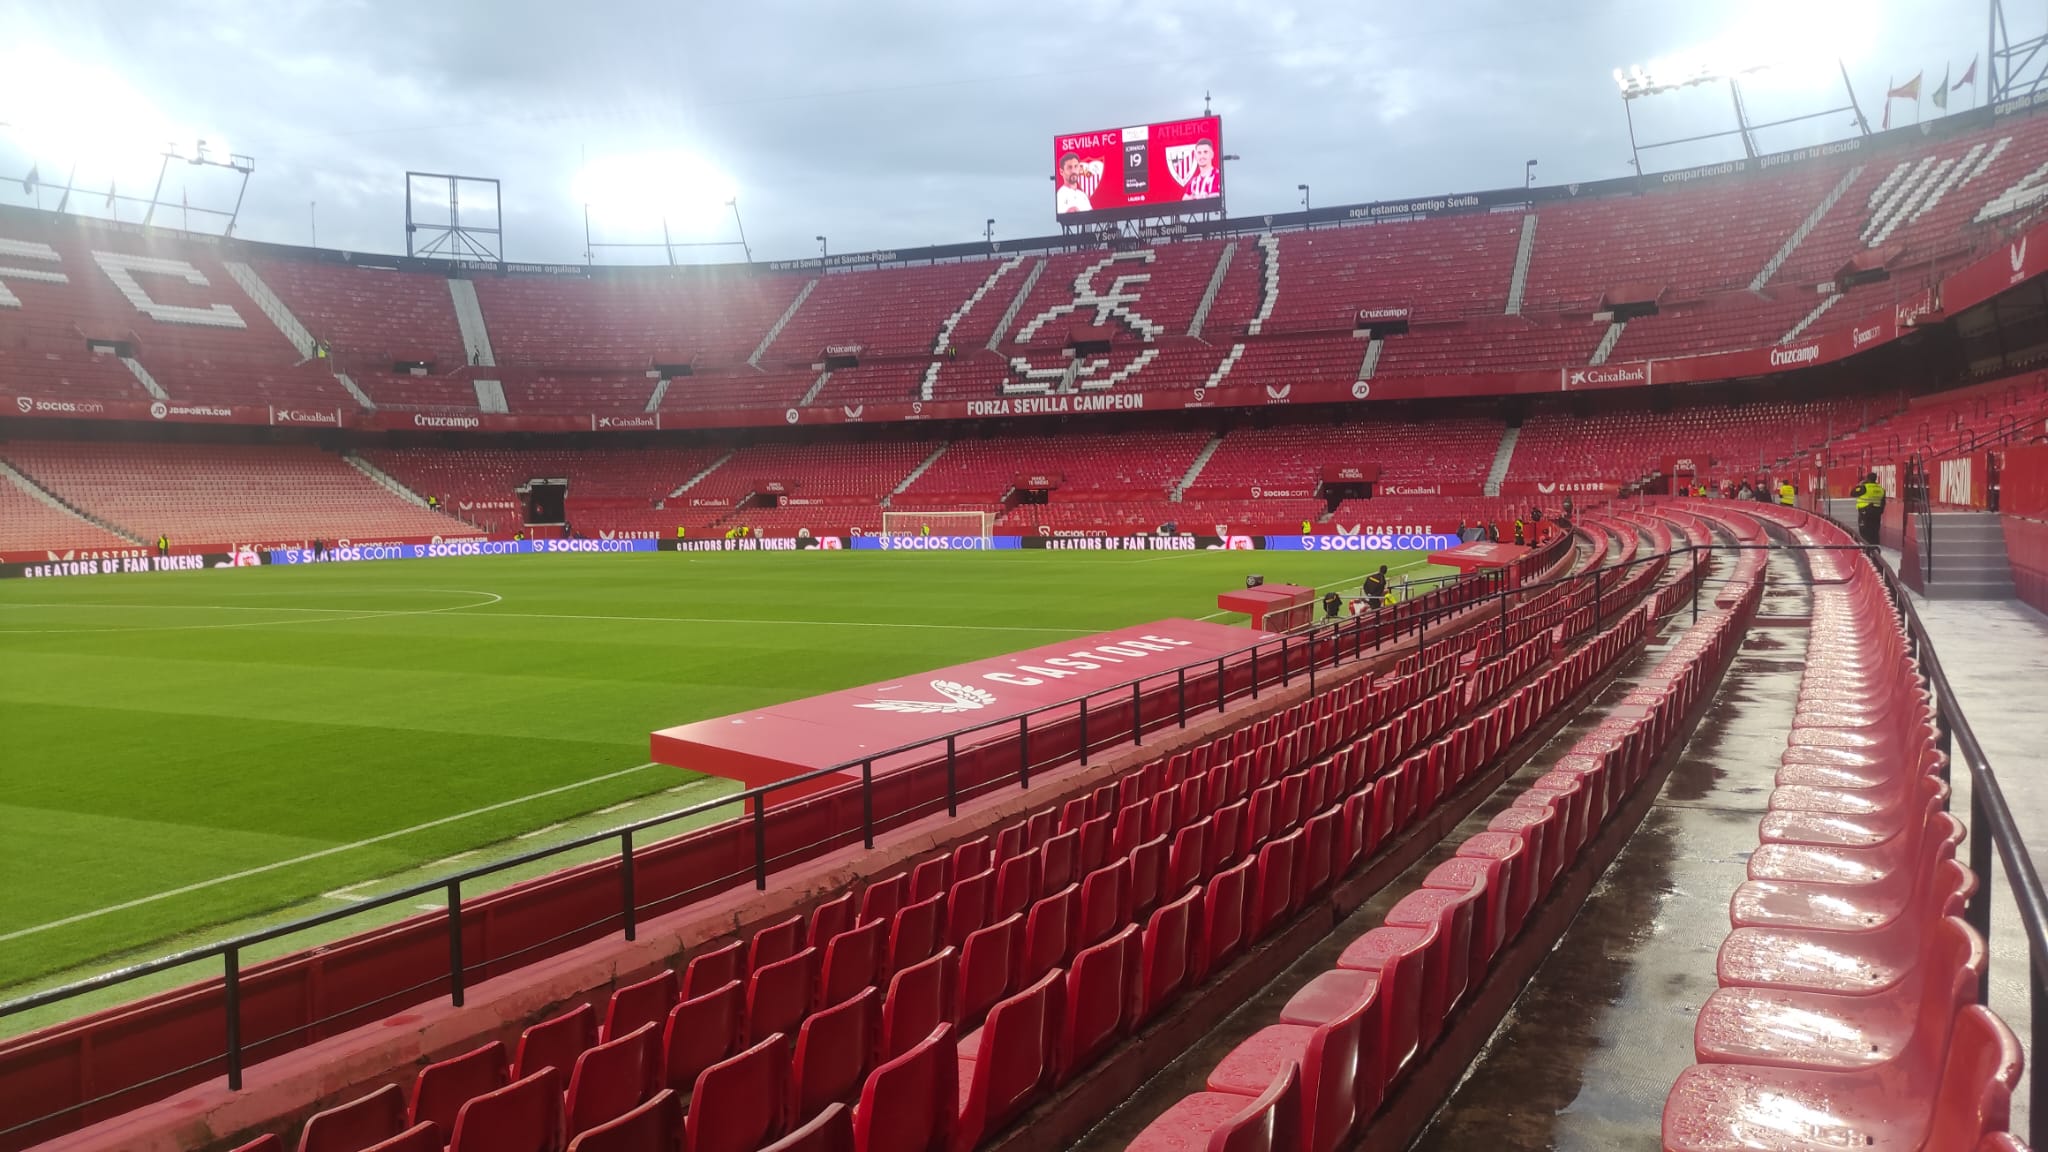 Puntos uno a uno del Sevilla FC frente al Atlético: Ocampos no es delantero  - Estadio Deportivo